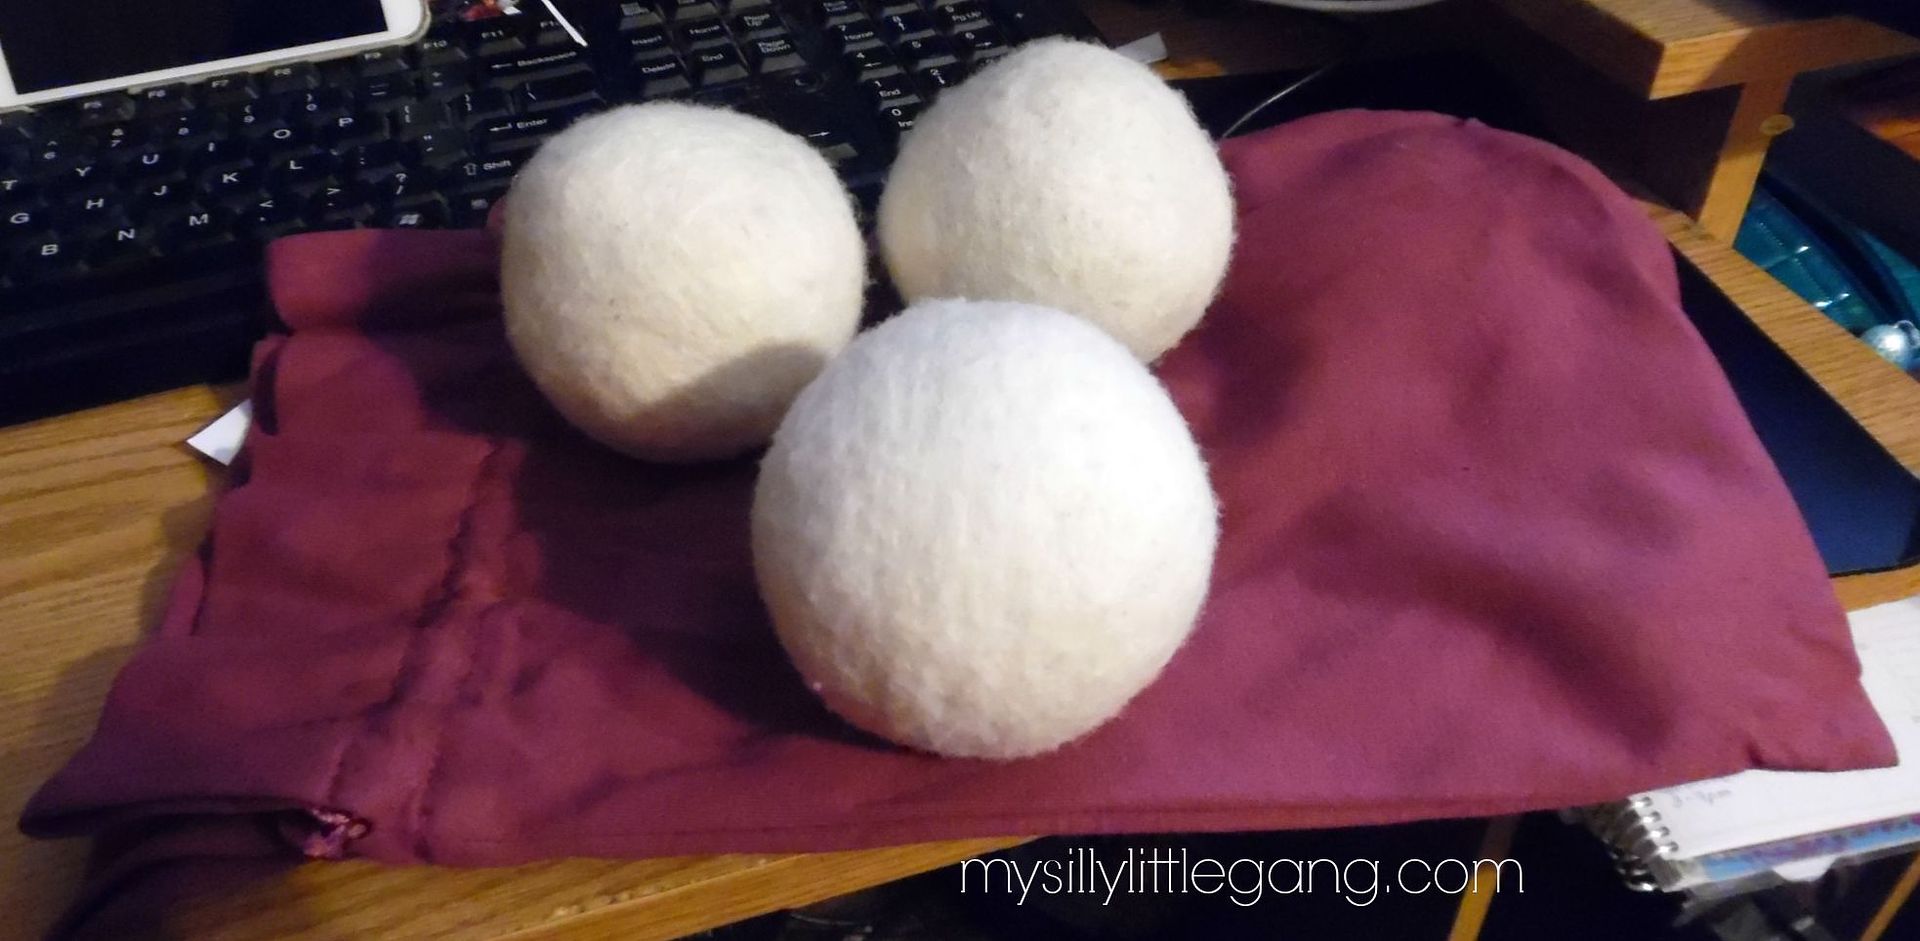 globein-artisan-box-wool-balls